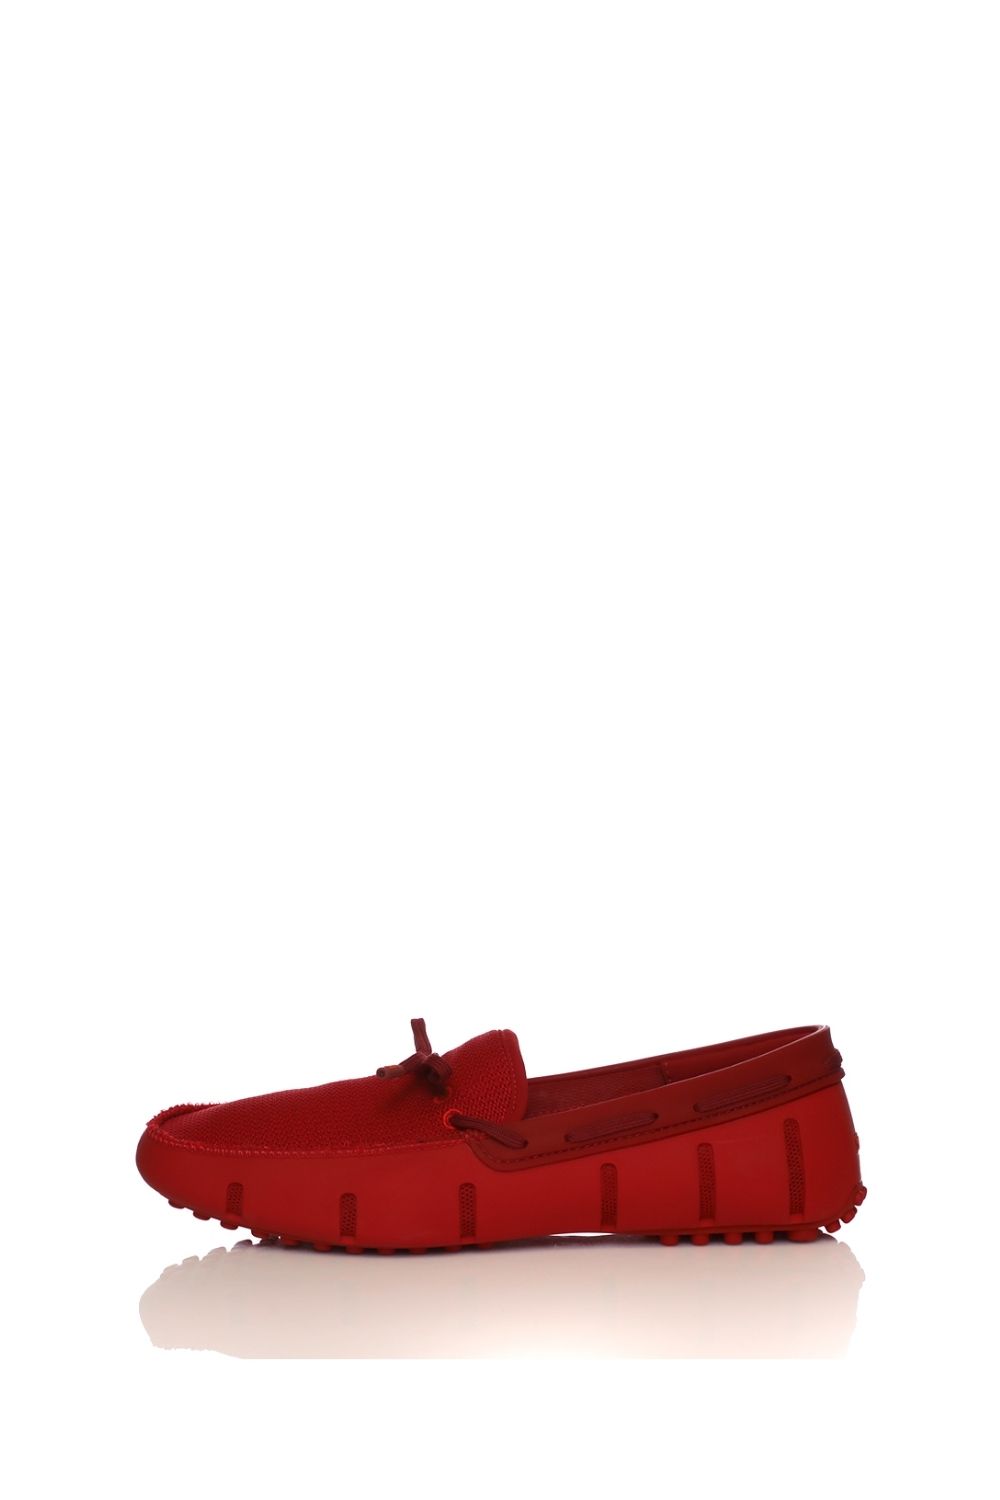 Ανδρικά/Παπούτσια/Μοκασίνια-Loafers SWIMS - Ανδρικά μοκασίνια SWIMS LACE LOAFER DRIVER κόκκινα